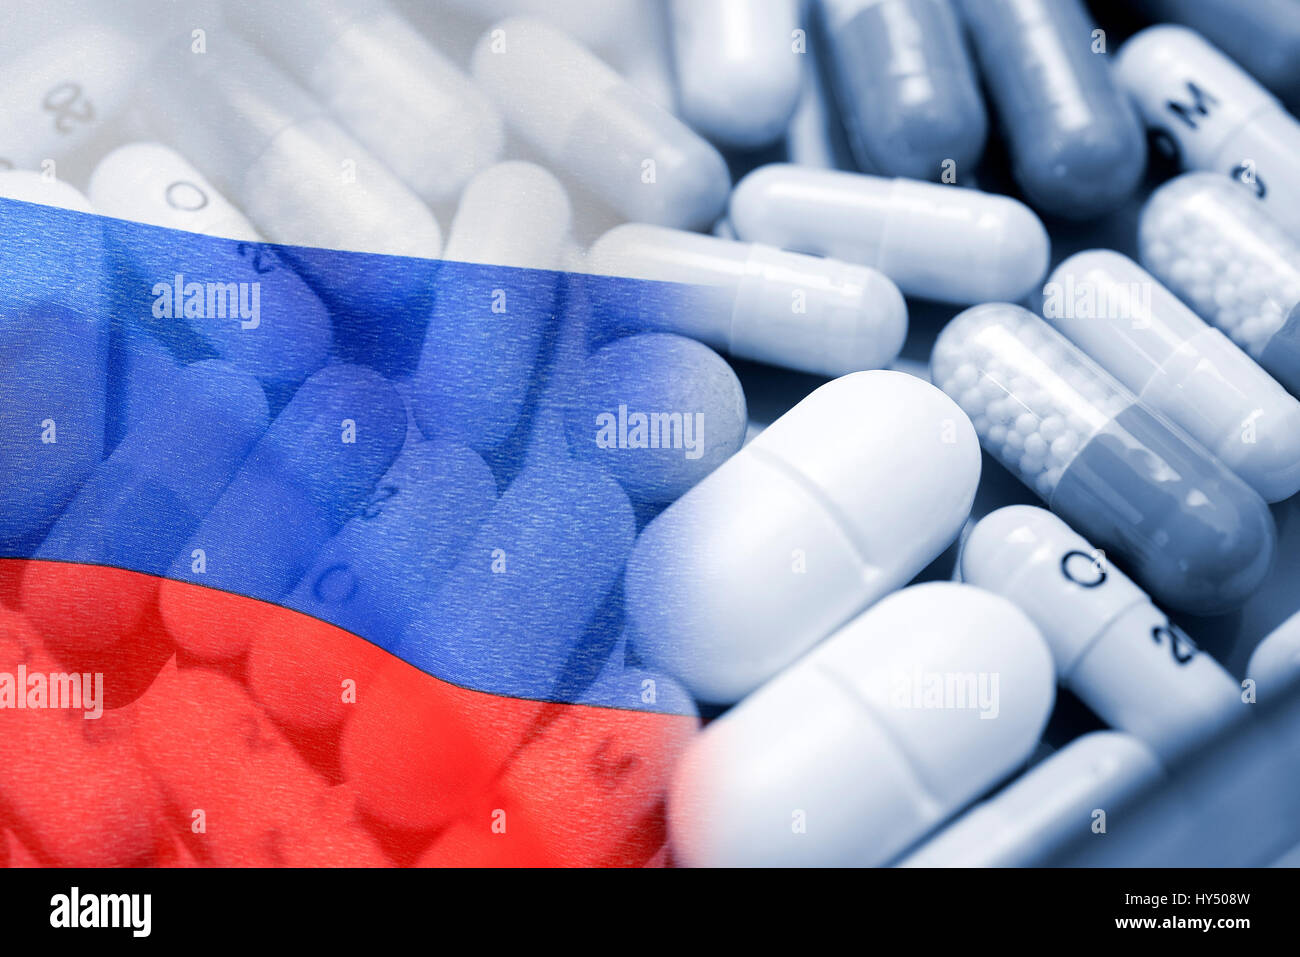 Compresse e bandiera della Russia, scandalo doping, Tabletten und Russland-Fahne, Doping-Skandal Foto Stock